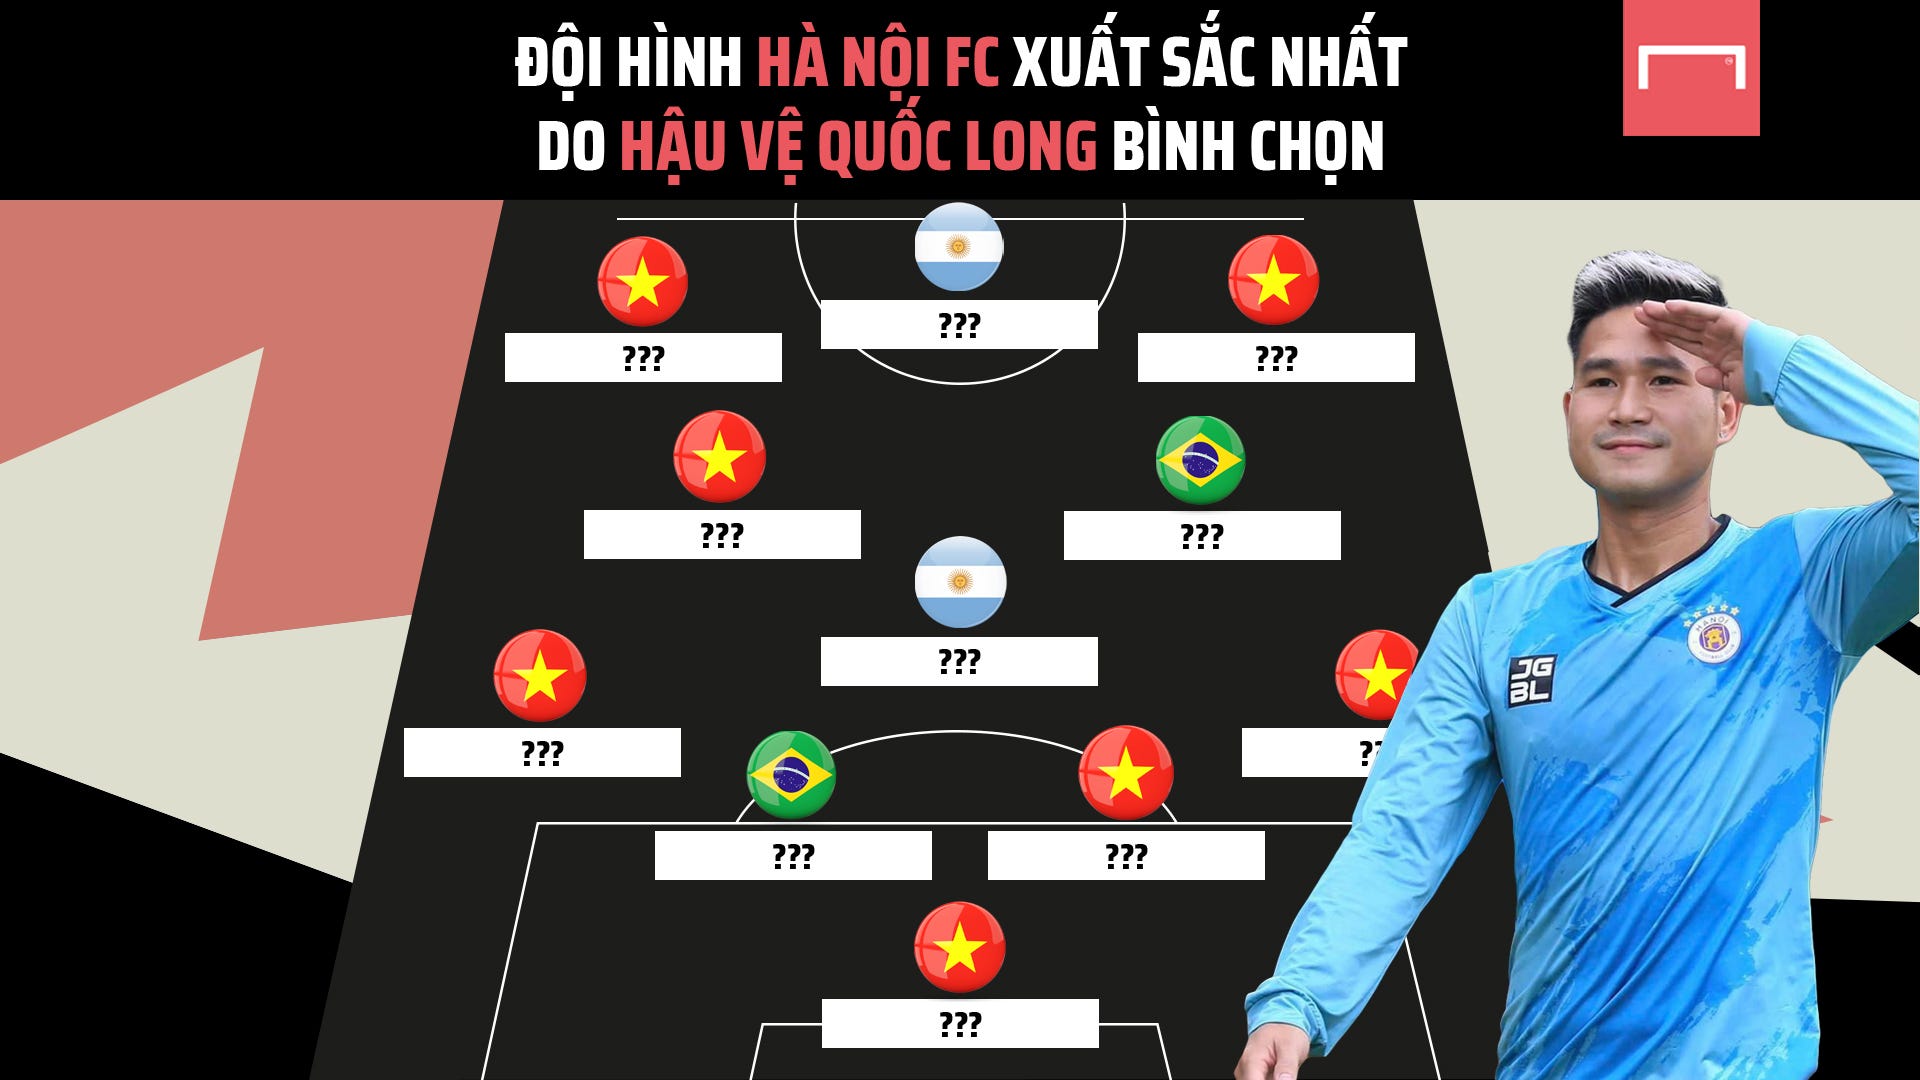 (V.League) Đội hình Hà Nội FC mạnh nhất dưới lựa chọn của hậu vệ Nguyễn Quốc Long